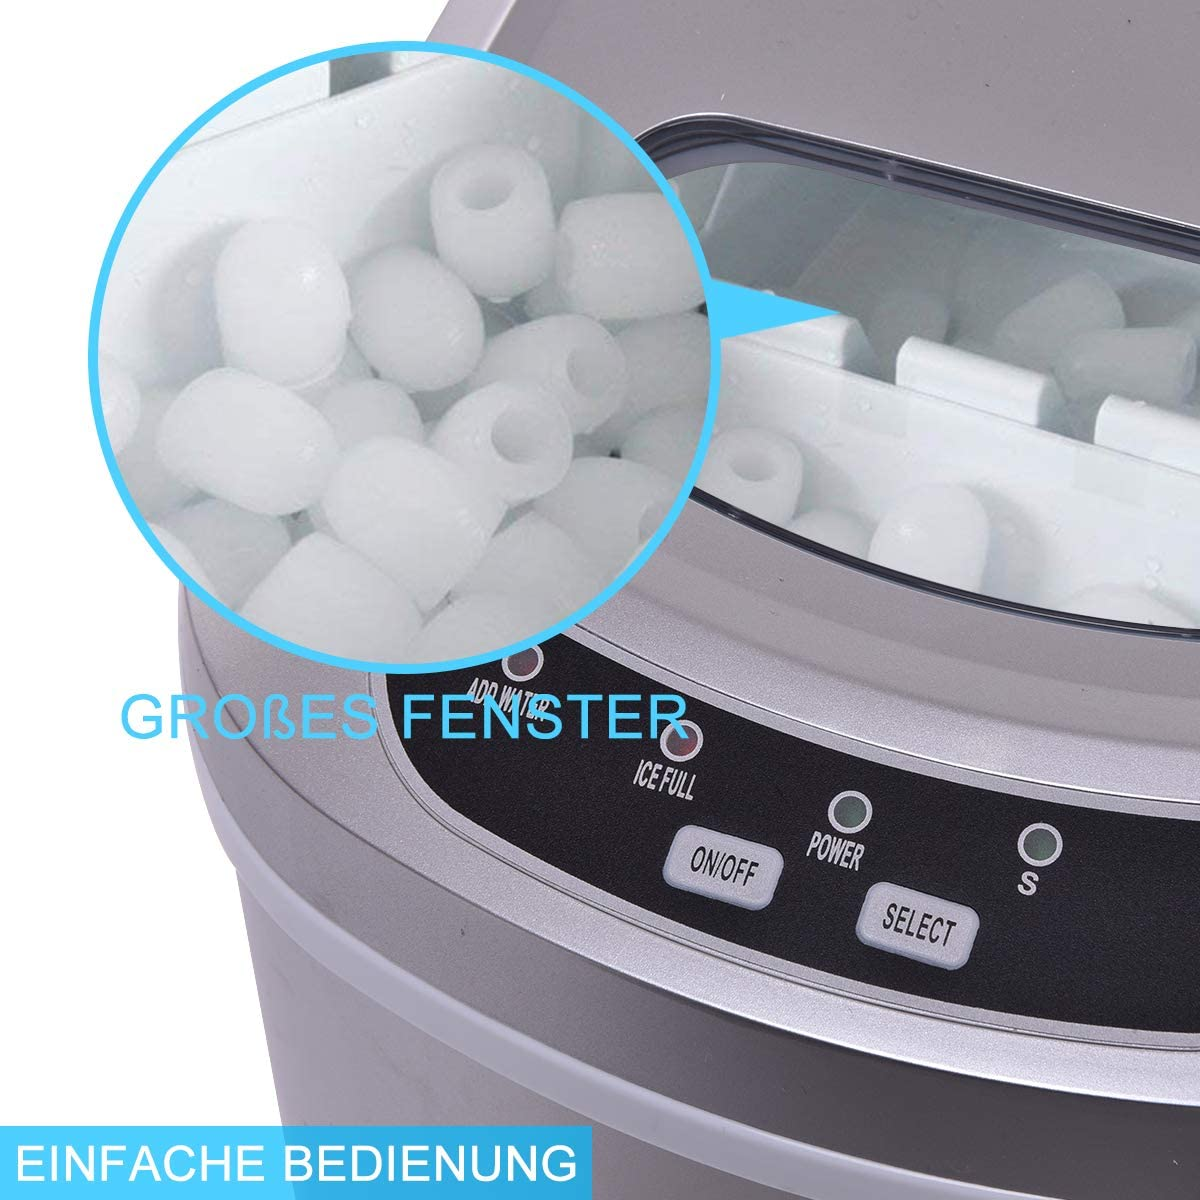 COSTWAY Eismaschine Eiswürfelbereiter (105 Silber) Watt